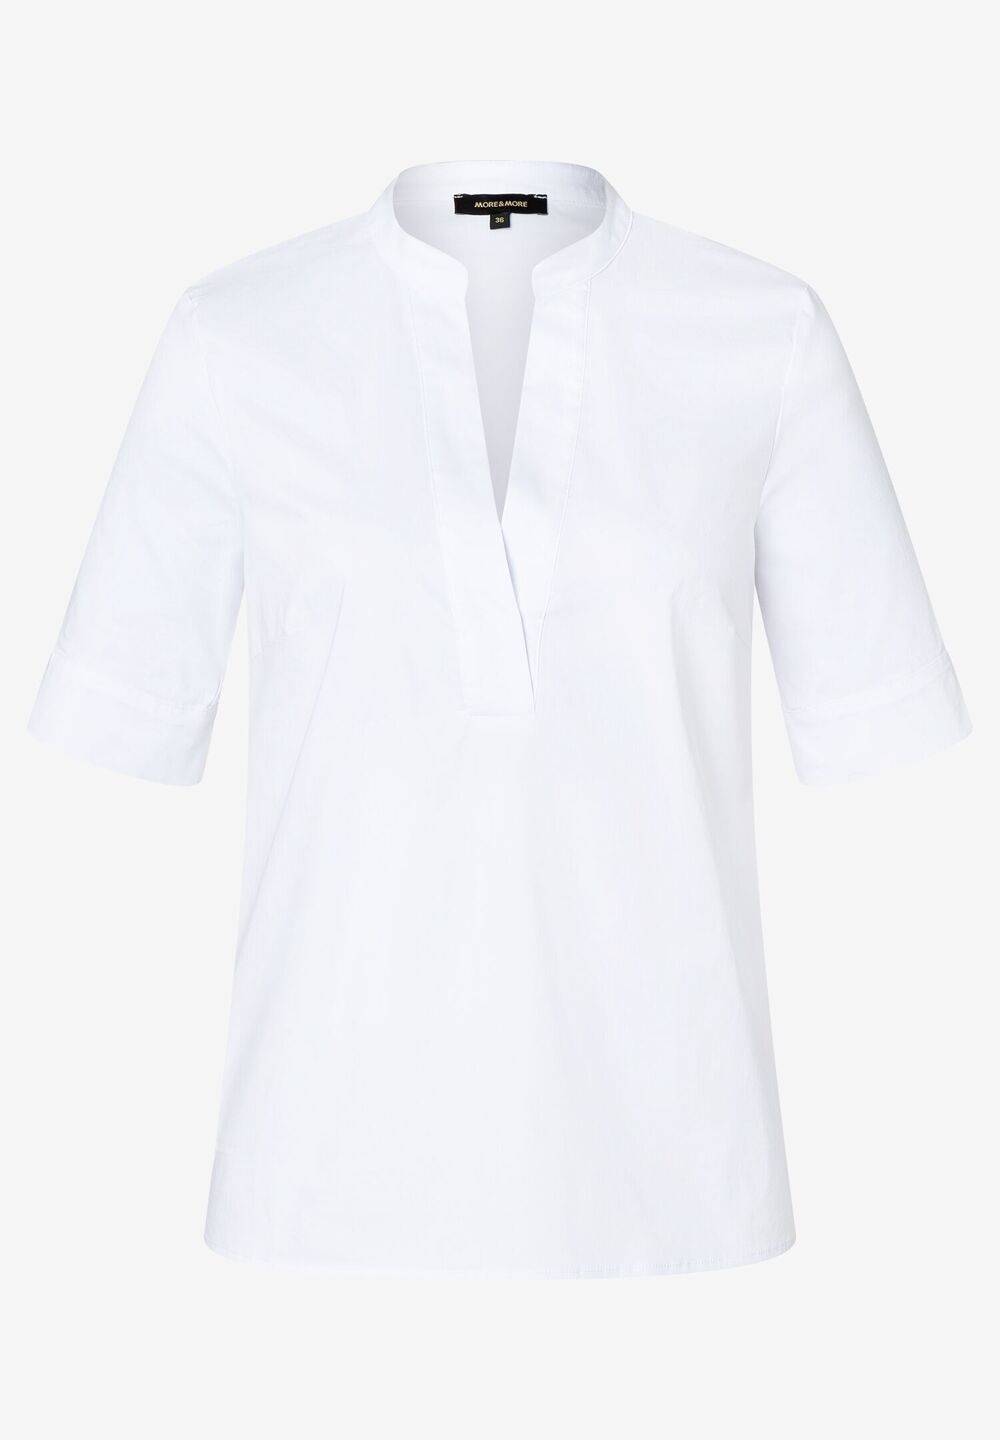 Baumwoll/Stretch Bluse, weiß, Sommer-Kollektion, weissFrontansicht